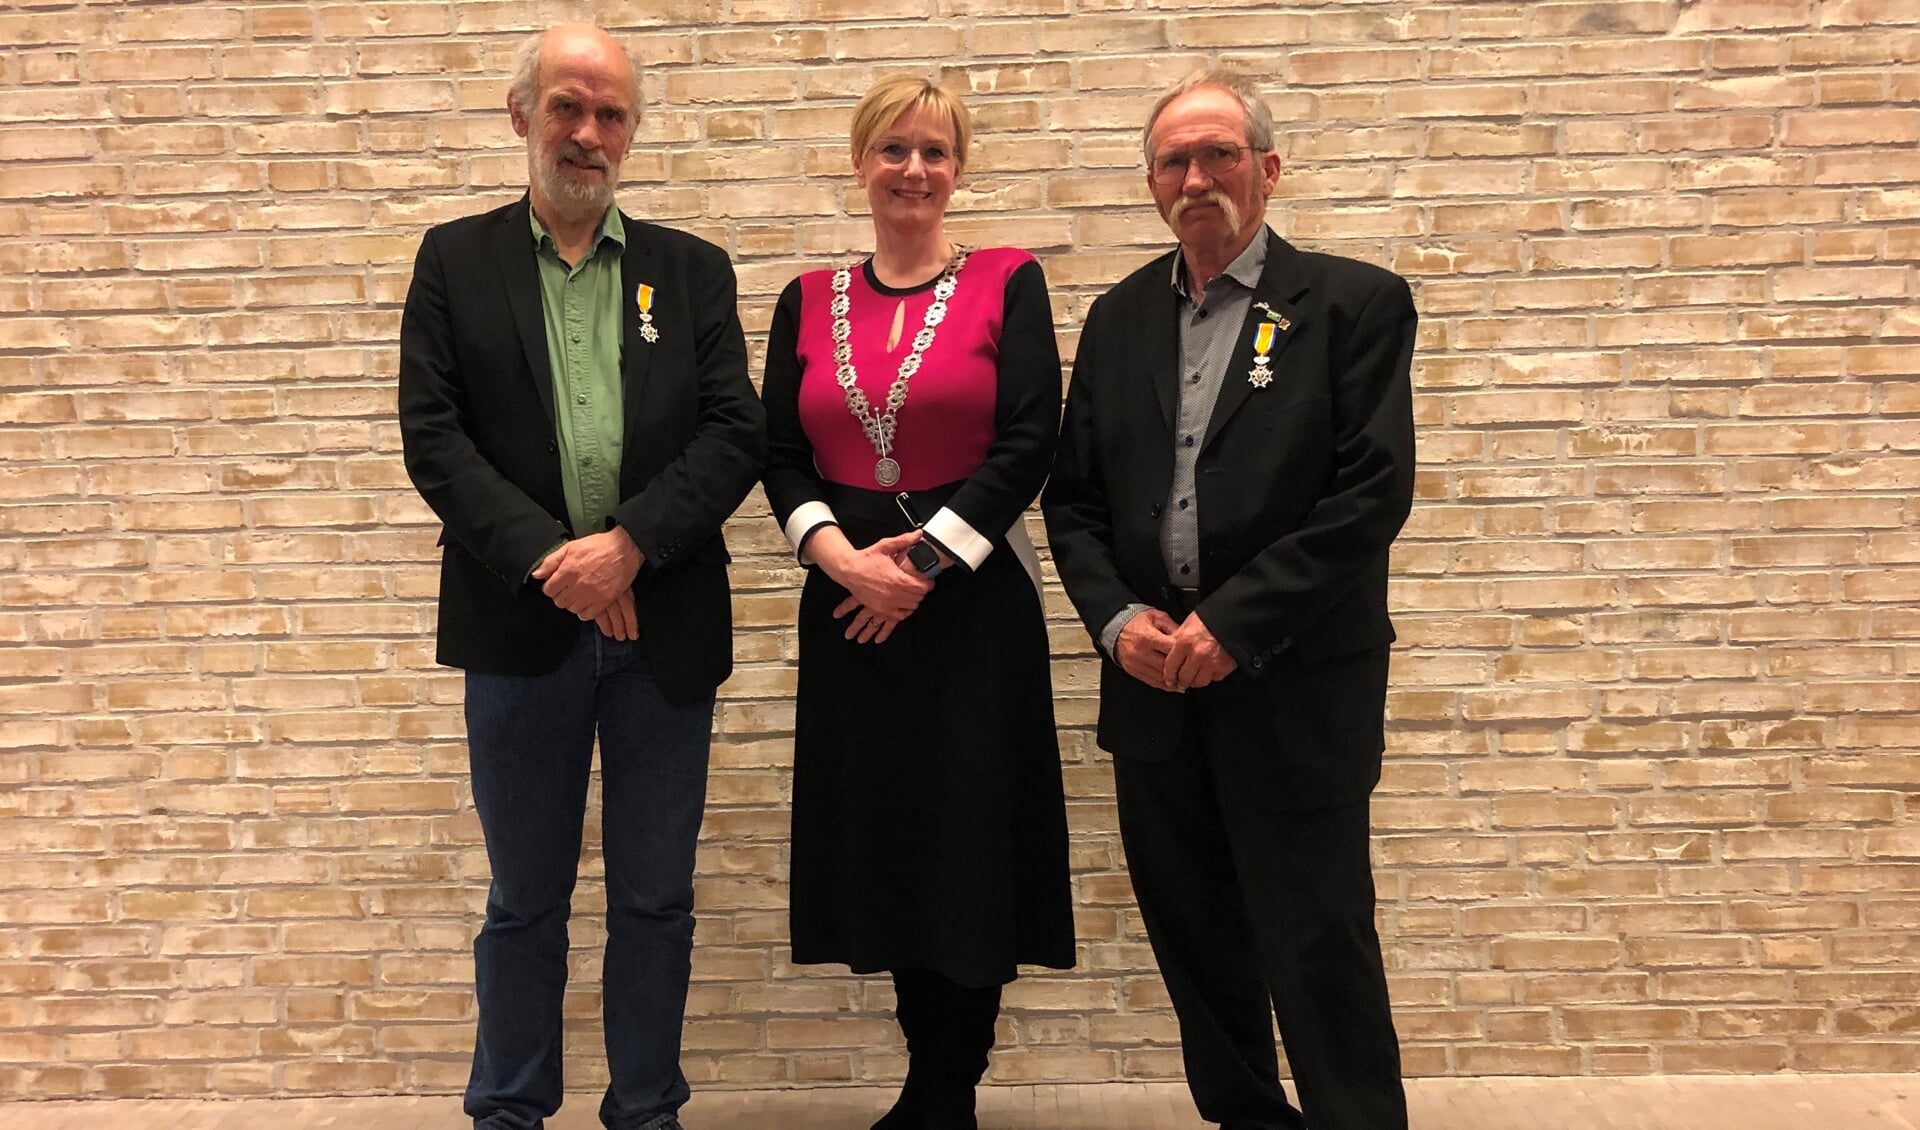 Burgemeester Marianne Besselink van de gemeente Bronckhorst met naast zich de onderscheiden Herman van Rooijen (links) en Chris Jansen (rechts). Foto: Emy Vesseur